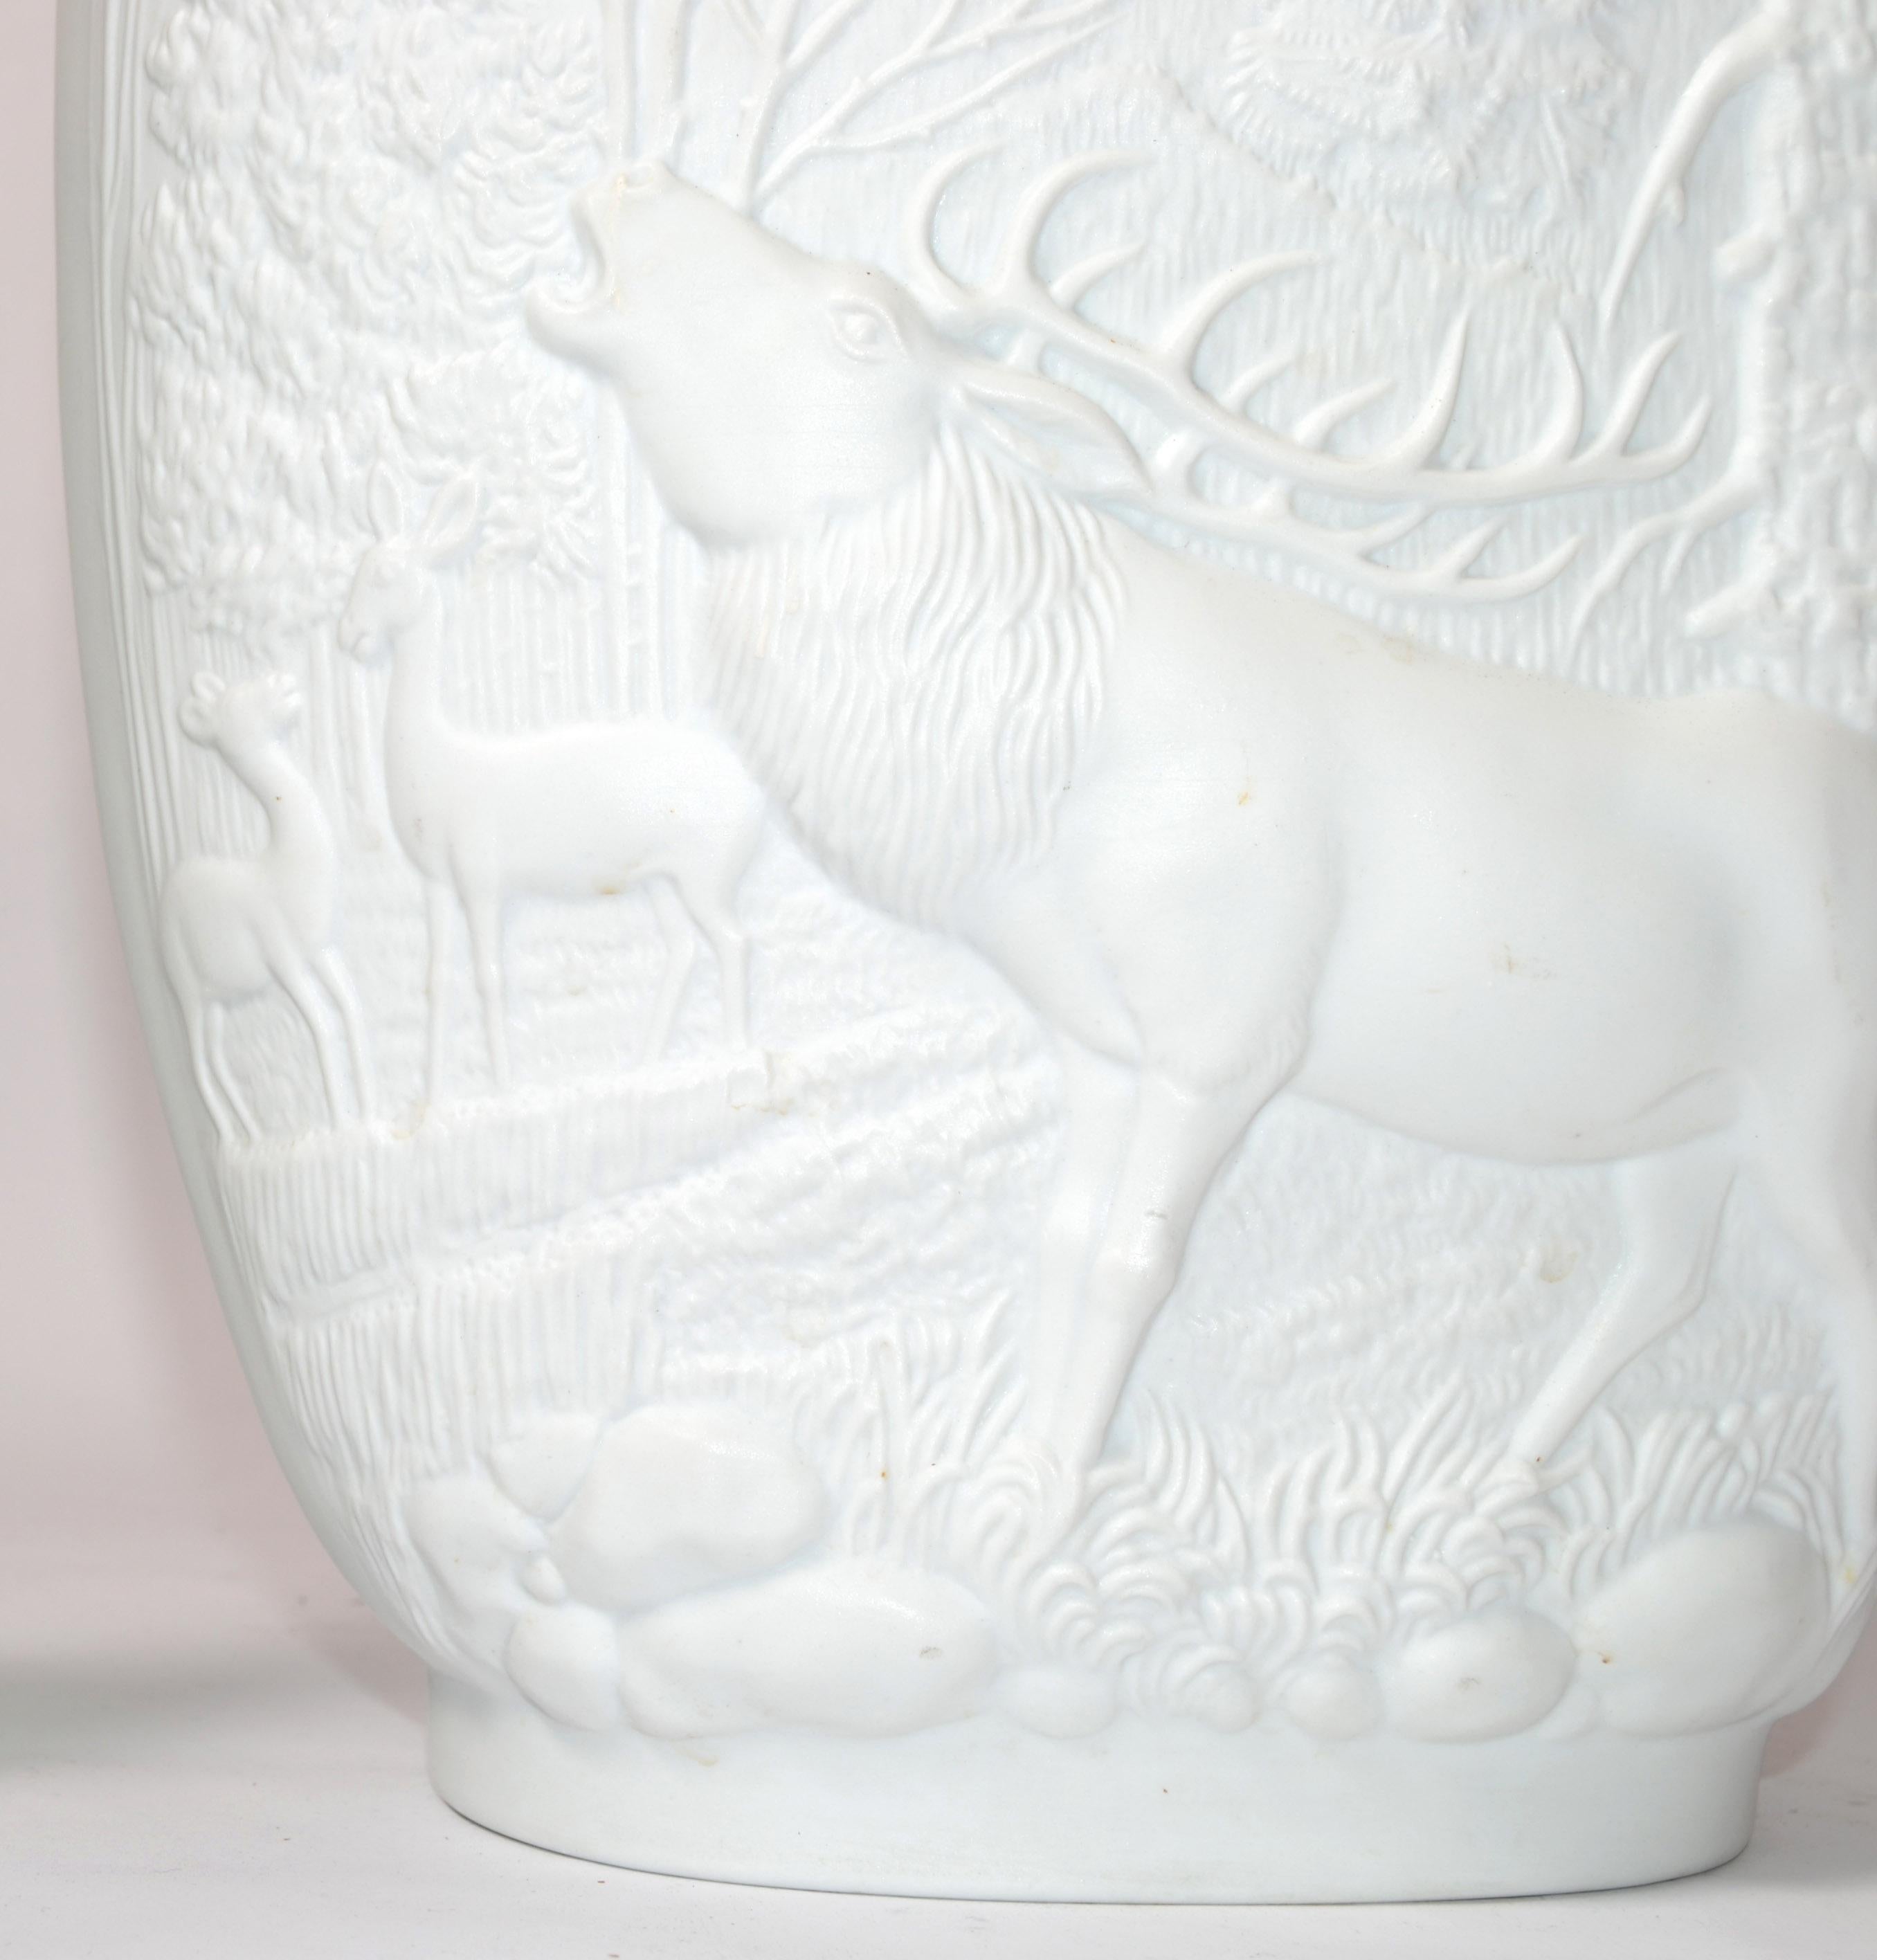 Glazed Bavaria Rosenthal White Bisque Flower Vase 2D Forrest Royal Porcelain Germany For Sale